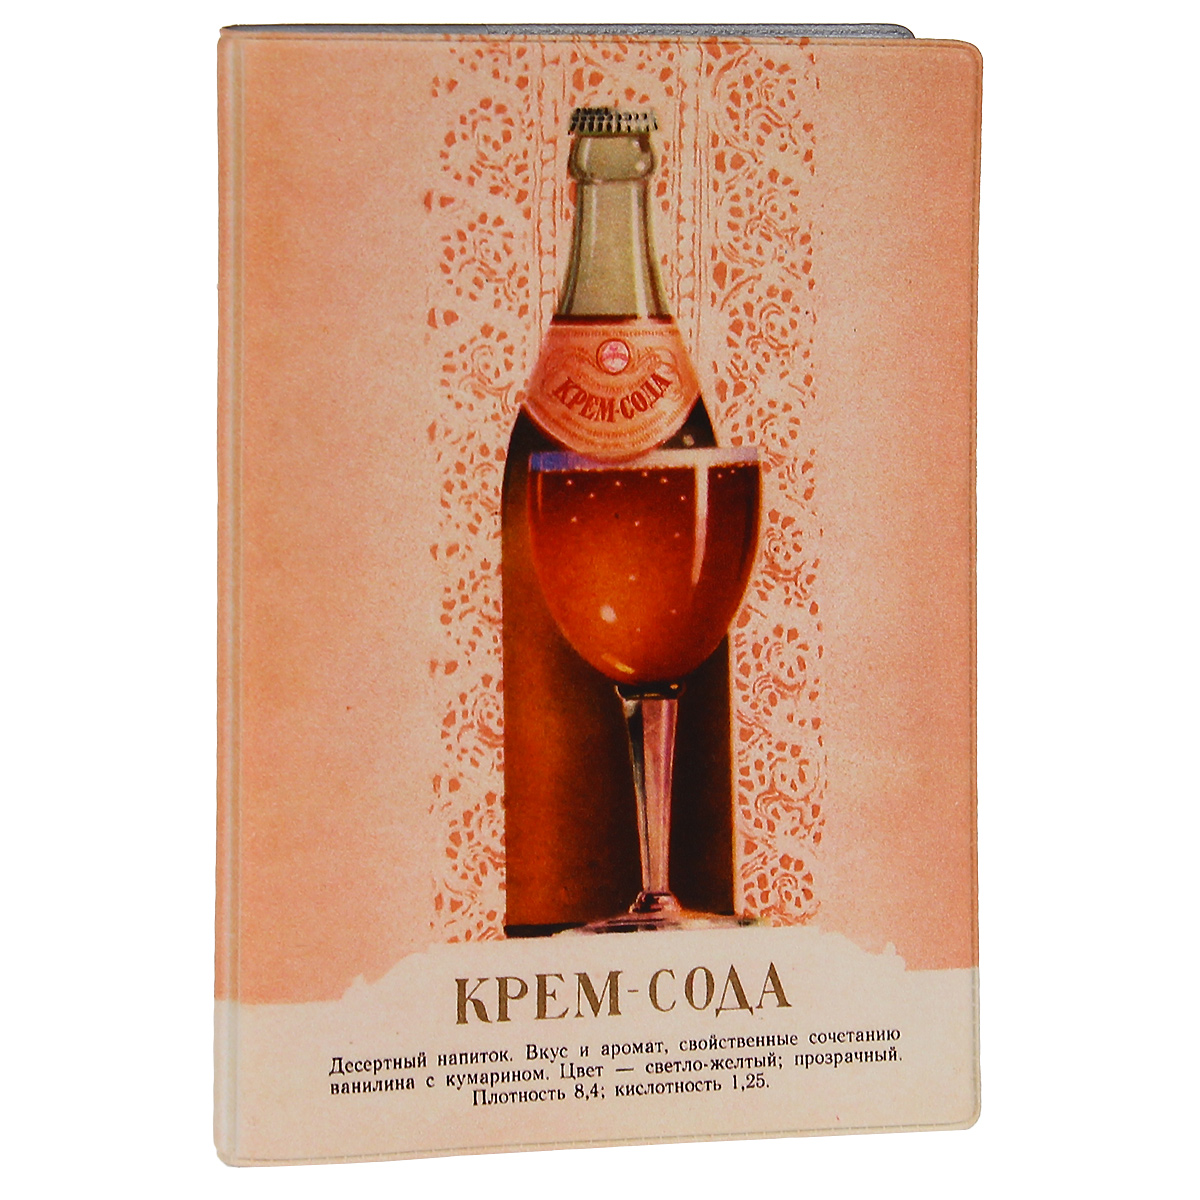 Обложка для паспорта Крем-сода. OZAM271